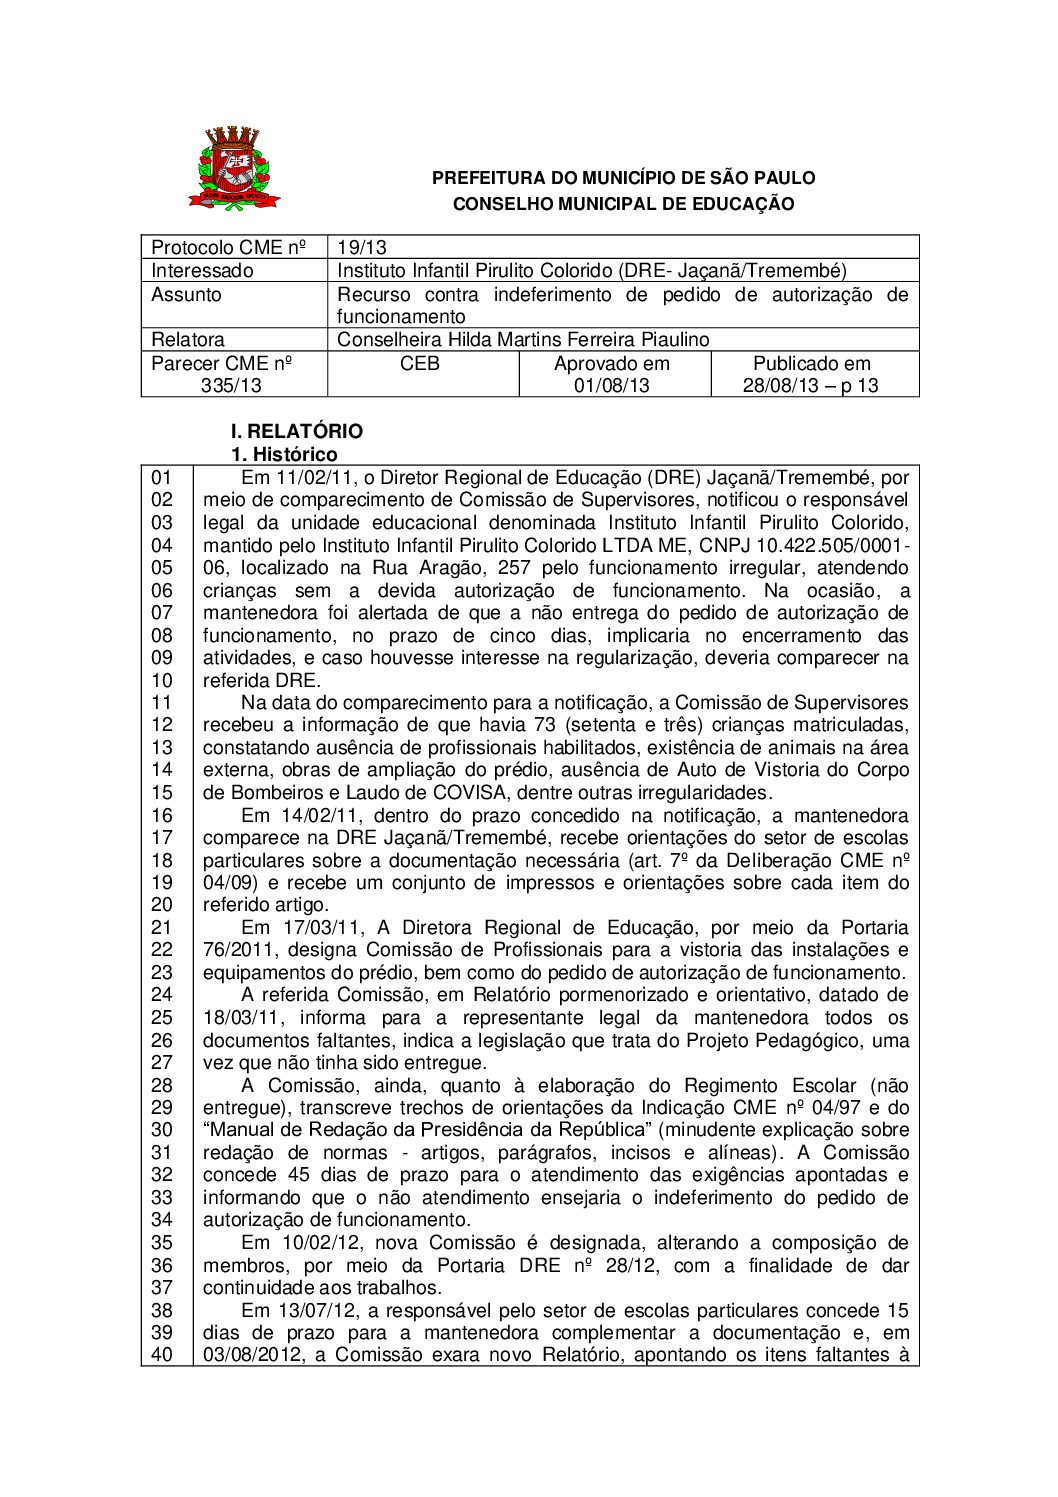 Parecer CME nº 335/2013 - Instituto Infantil Pirulito Colorido (DRE- Jaçanã/Tremembé) - Recurso contra indeferimento de pedido de autorização de funcionamento 